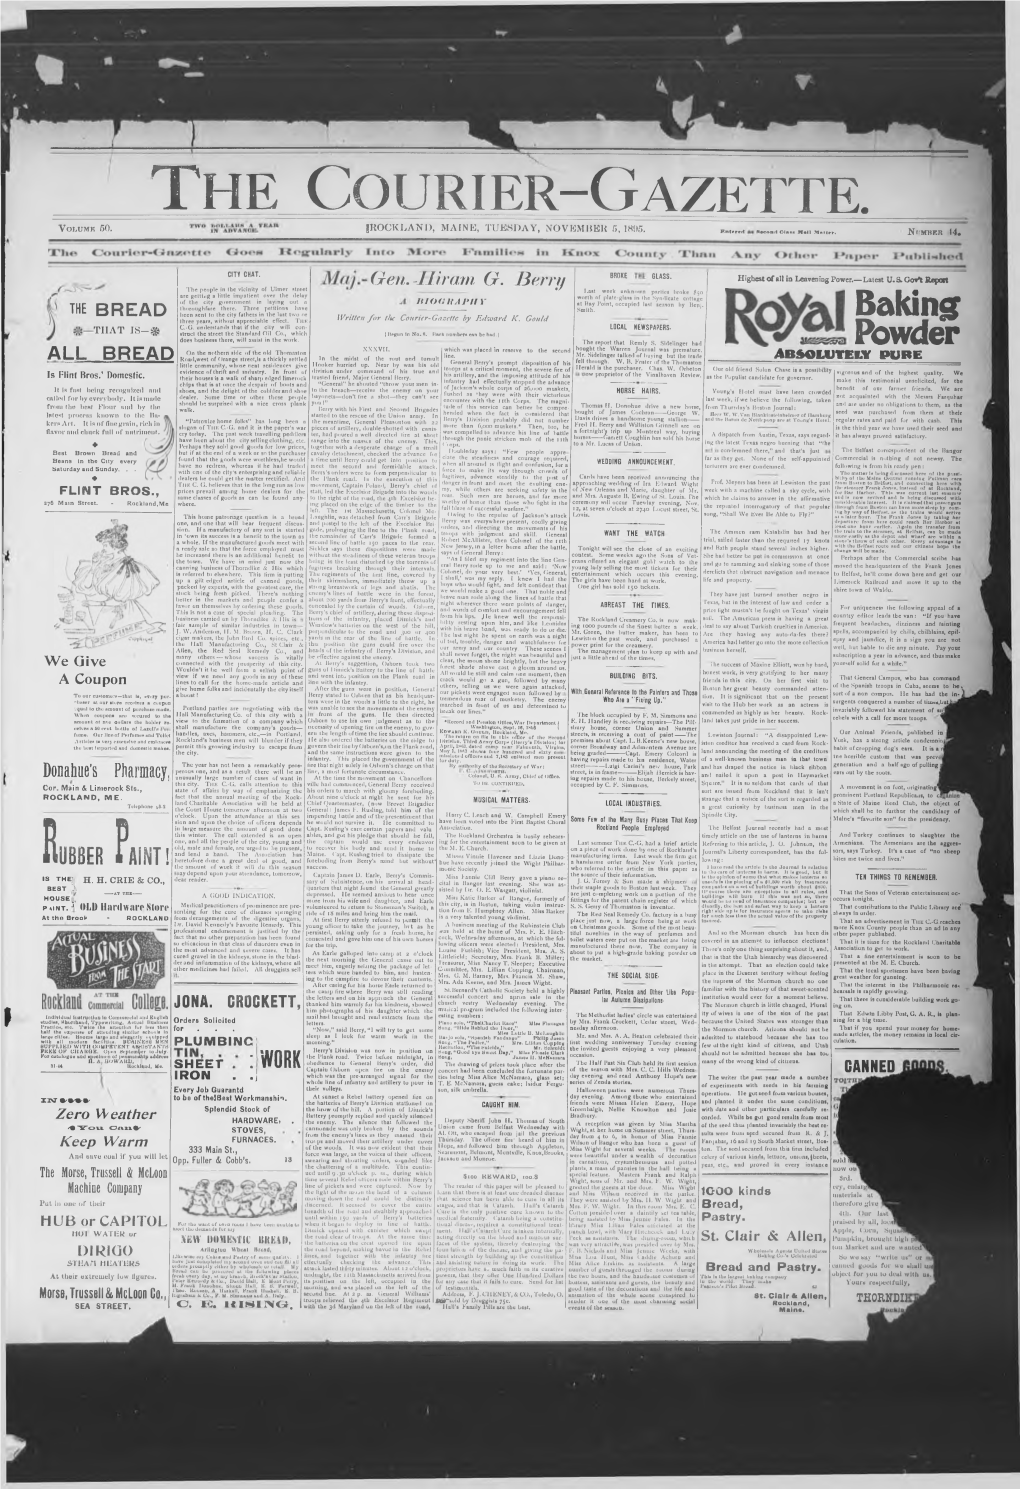 Courier Gazette Tuesday, November 5 1895